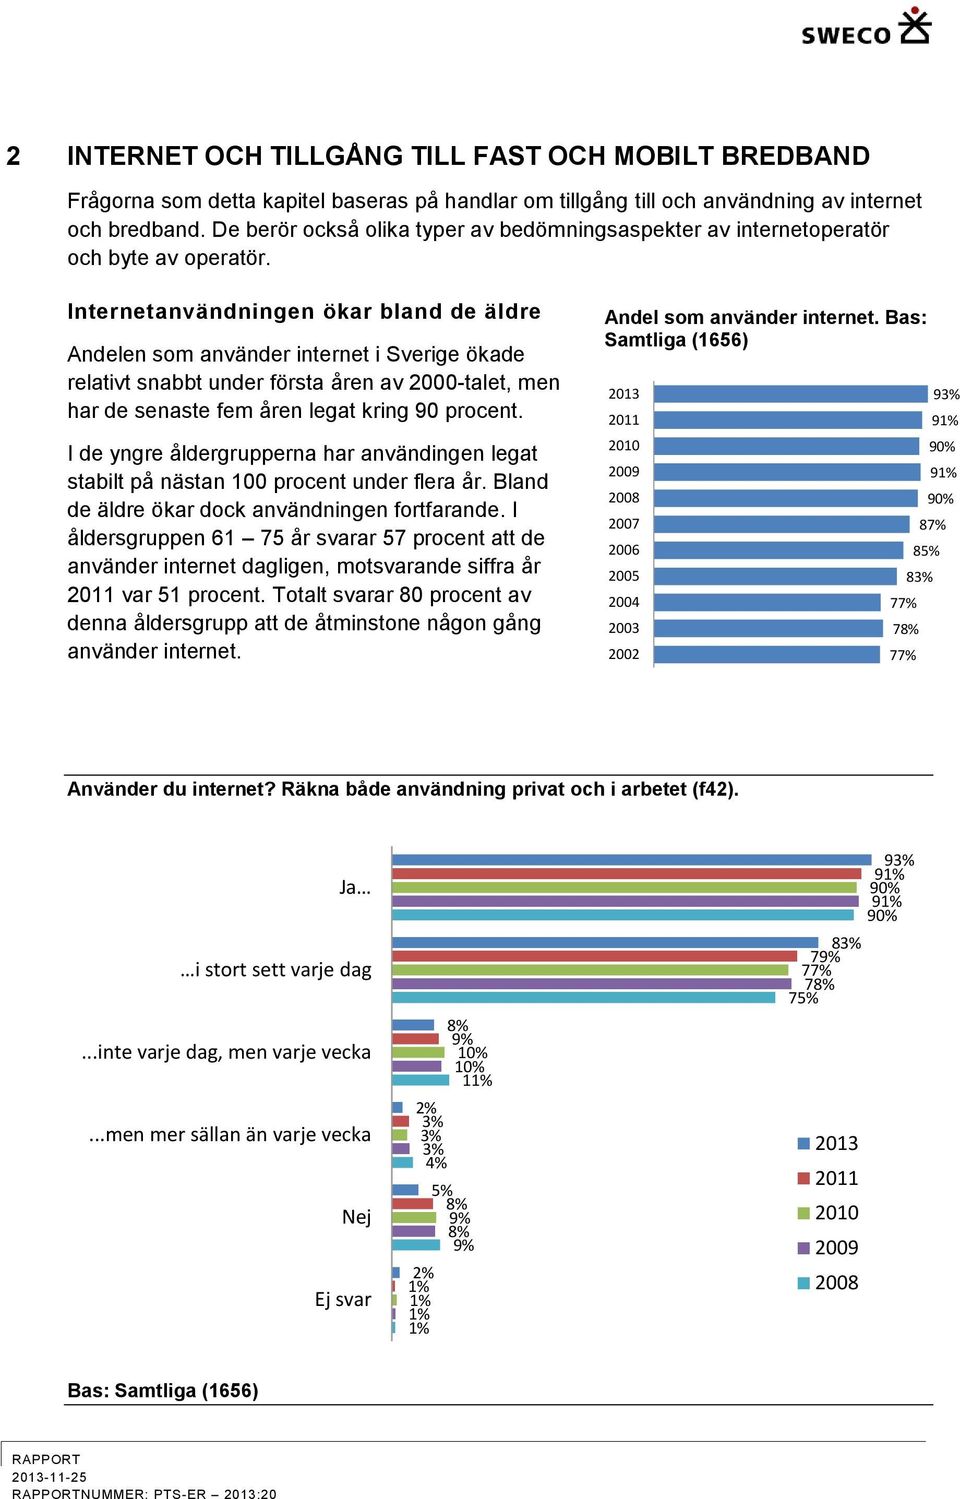 Internetanvändningen ökar bland de äldre Andelen som använder internet i Sverige ökade relativt snabbt under första åren av 2000-talet, men har de senaste fem åren legat kring 90 procent.